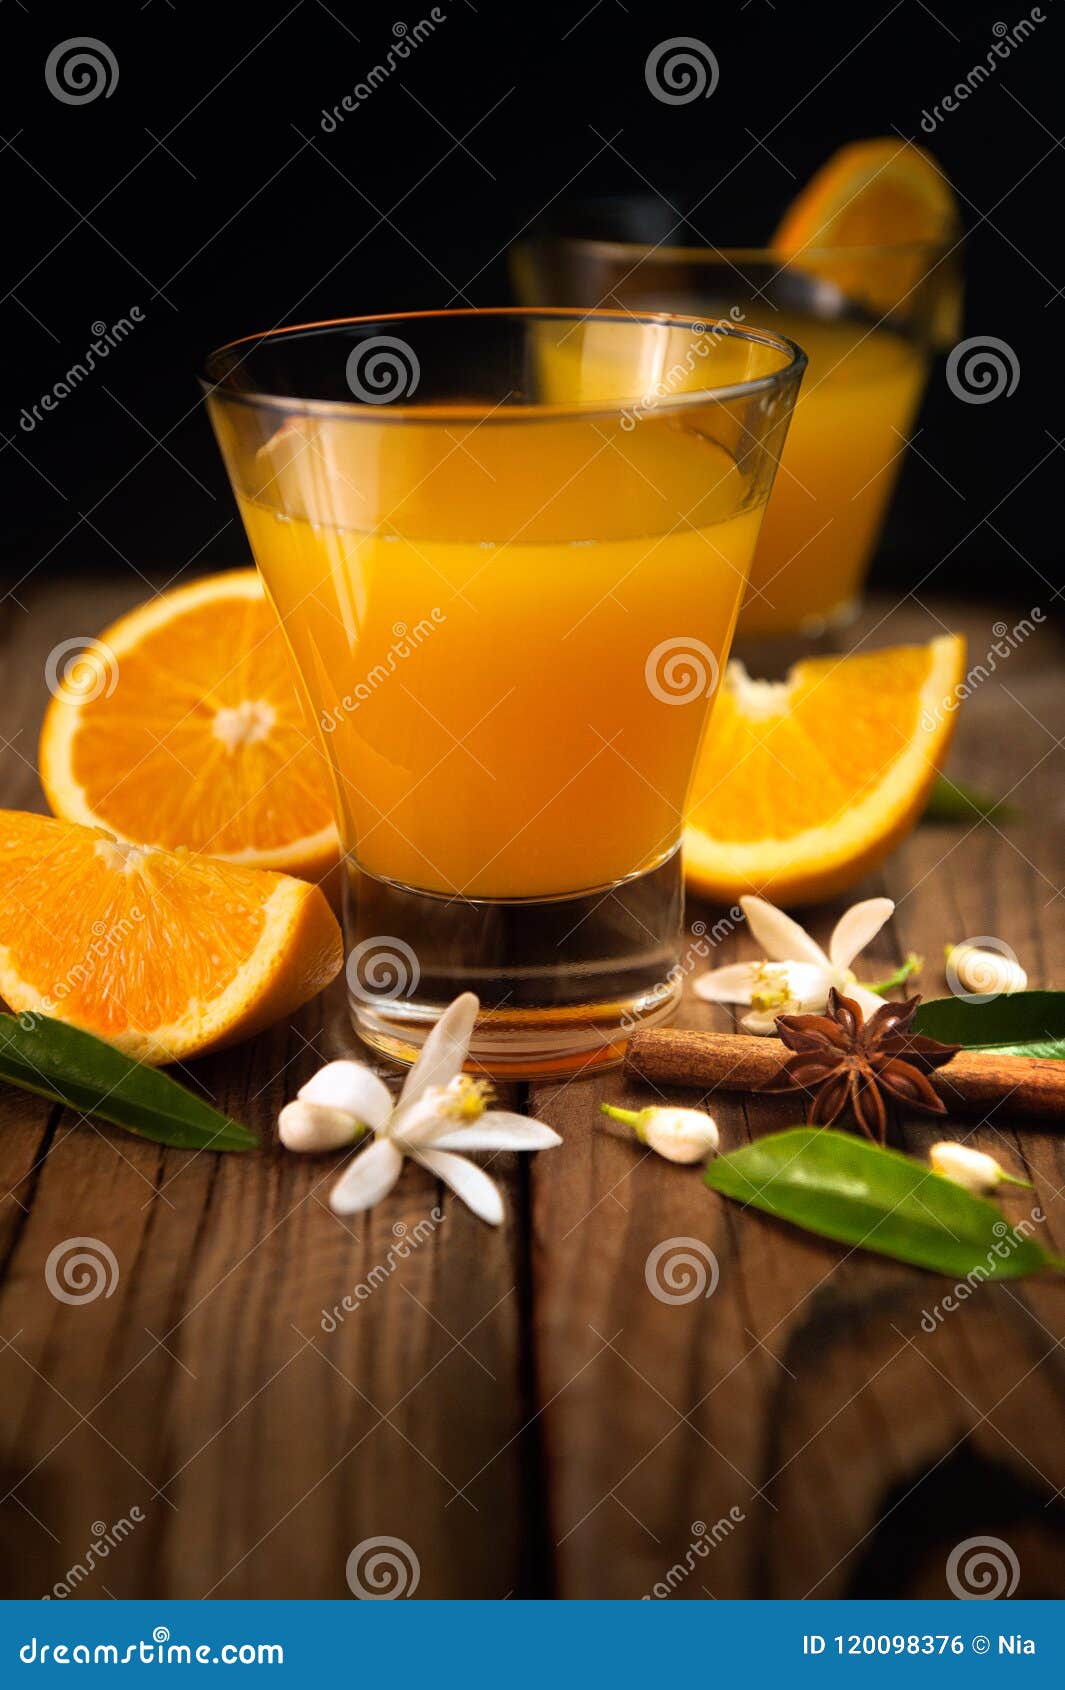 Orange, Orange Juice on Rustic Wood Background Stock Photo - Image of ...